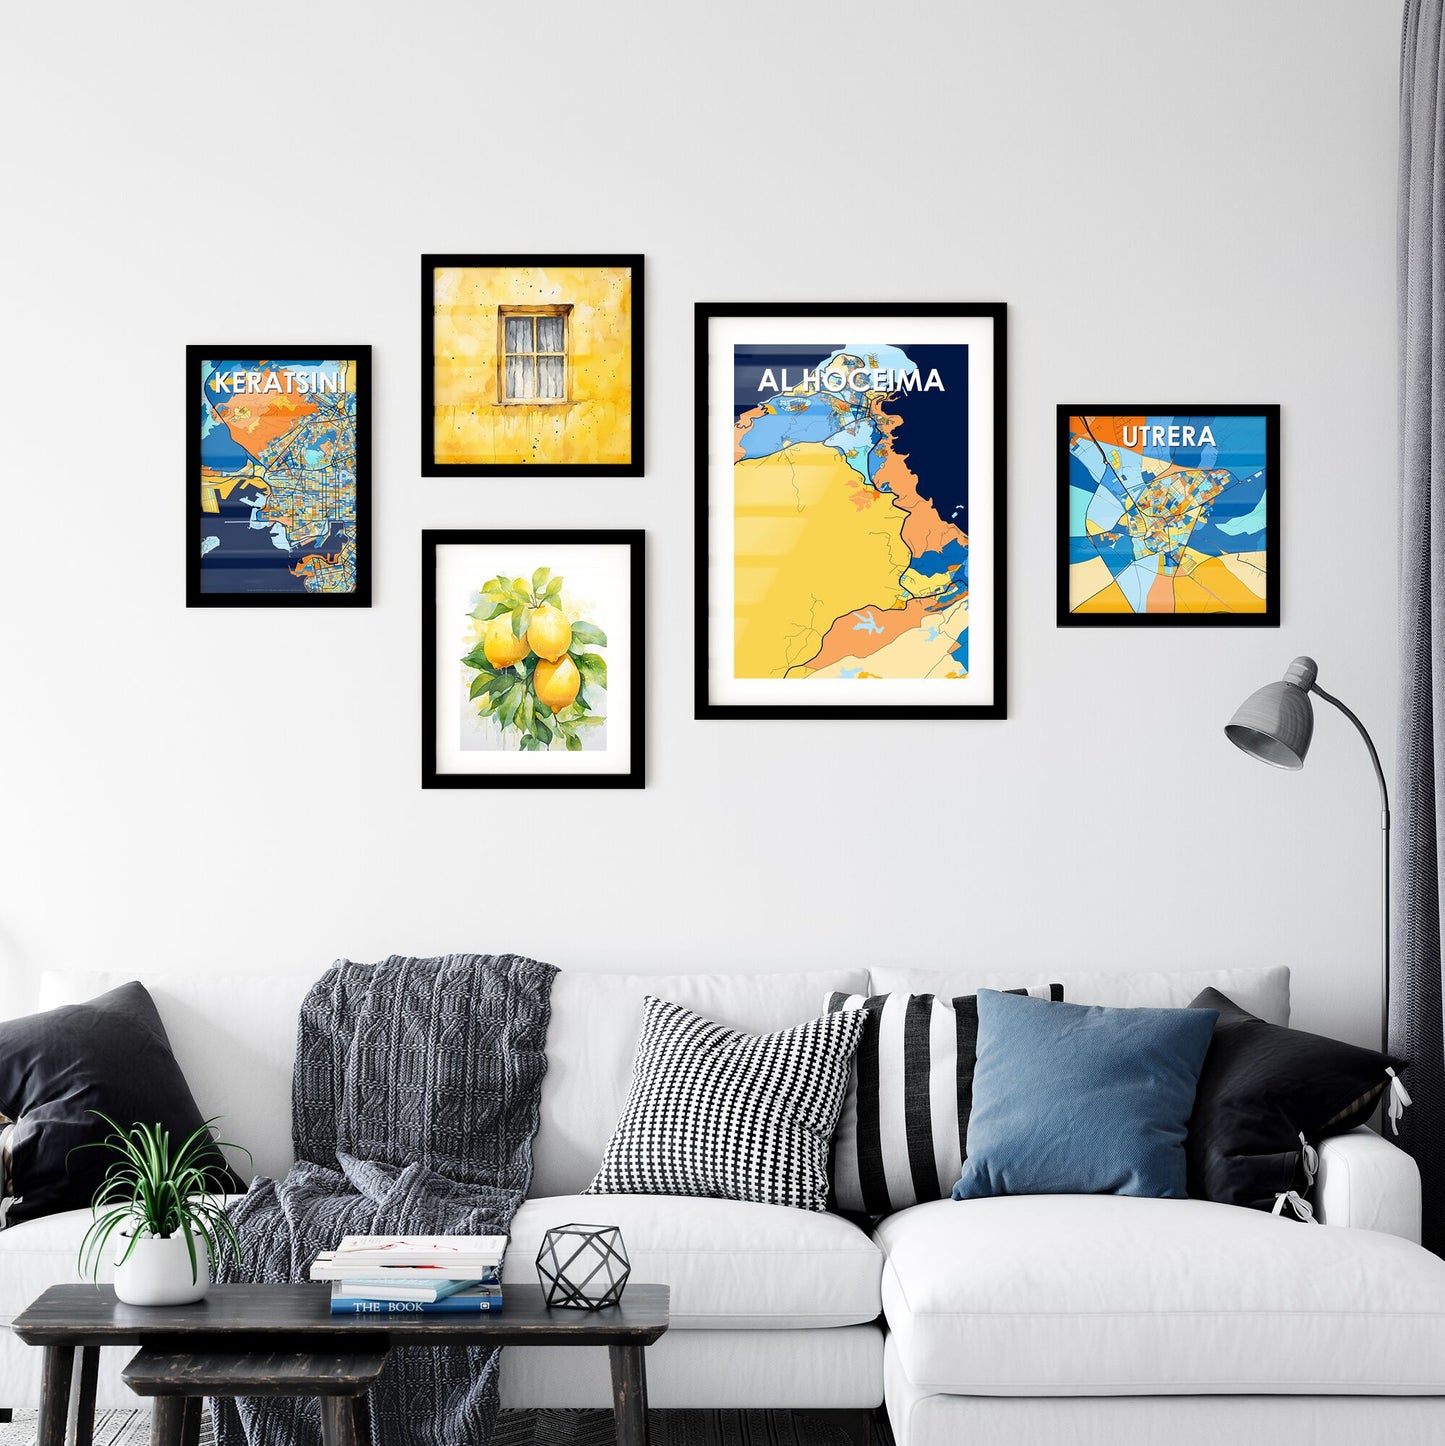 AL HOCEIMA MOROCCO Vibrant Colorful Art Map Poster Blue Orange